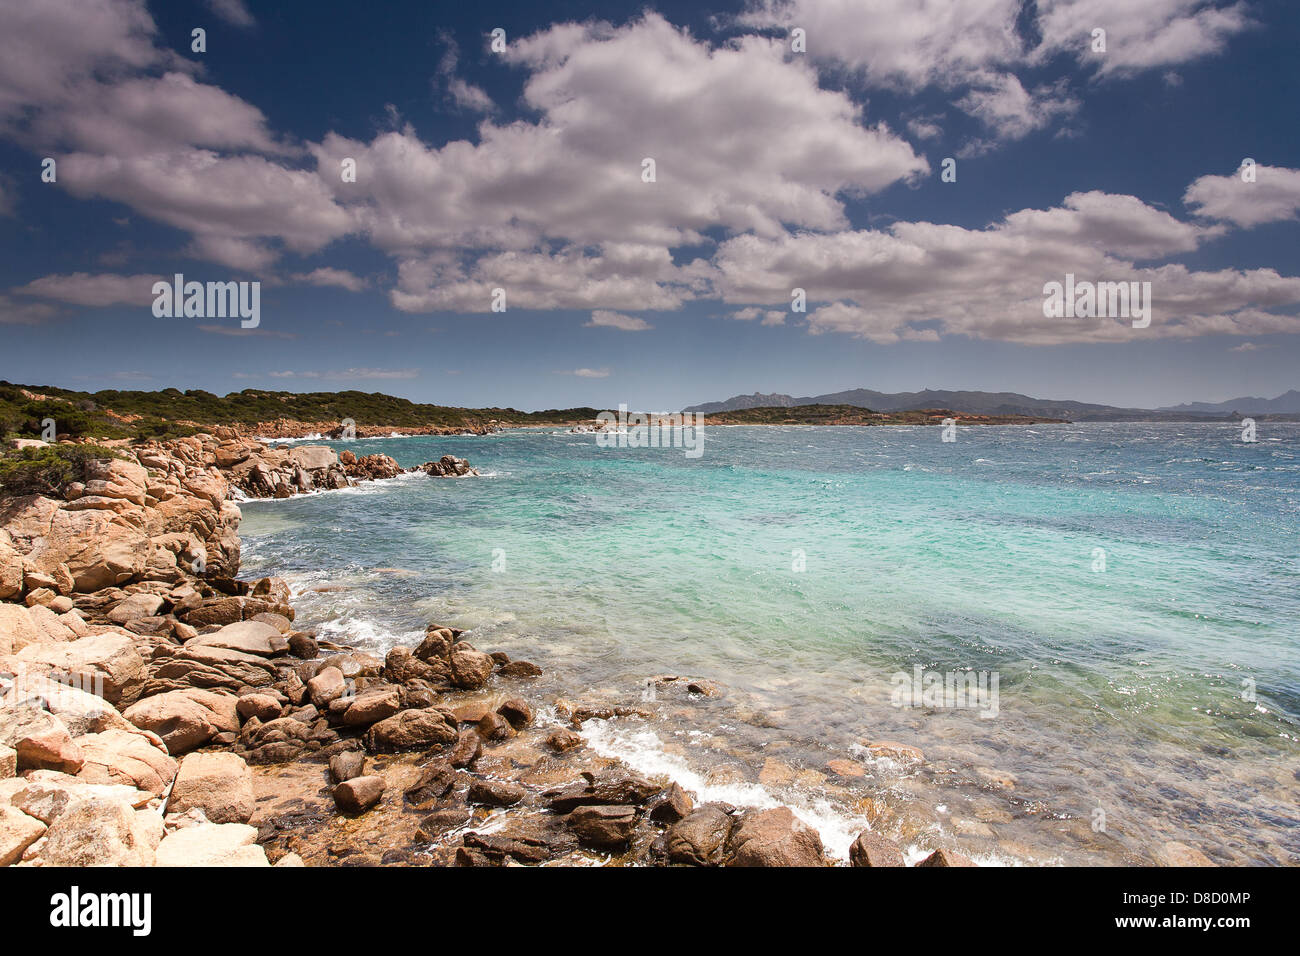 Isola Caprera, Archipelago of La Maddalena, Sardinia, Italy, Europe Stock Photo